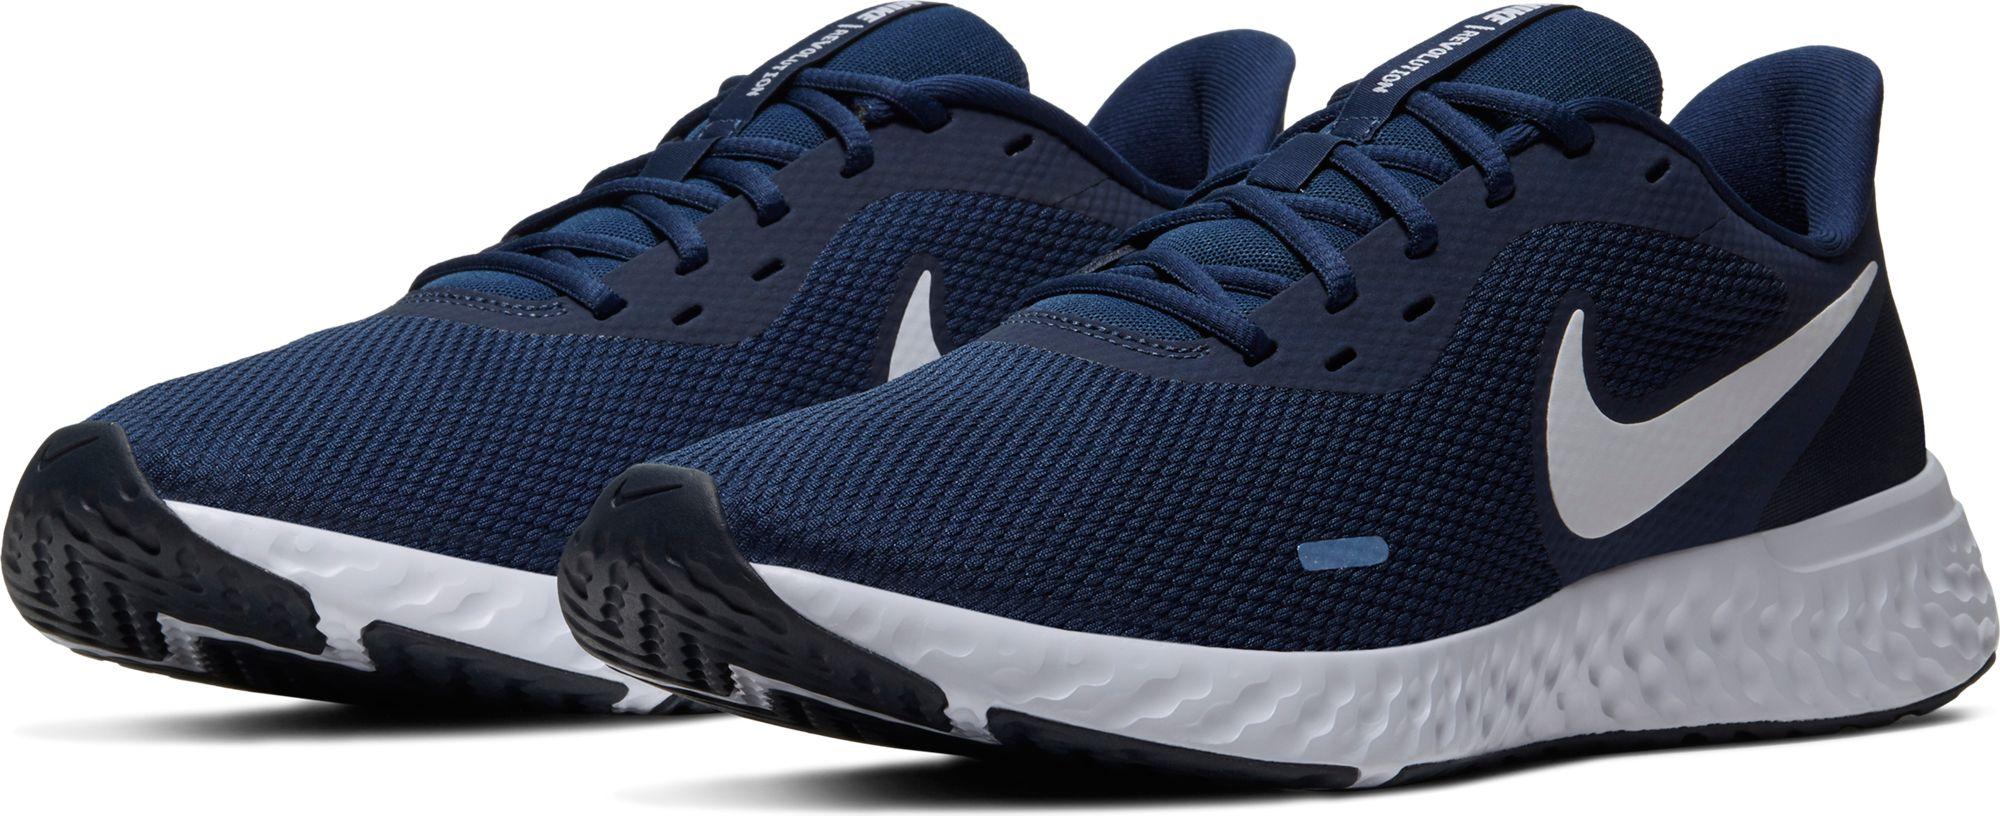 Nike Revolution 5 Running Shoe in Navy/White (Blue) for Men - Lyst